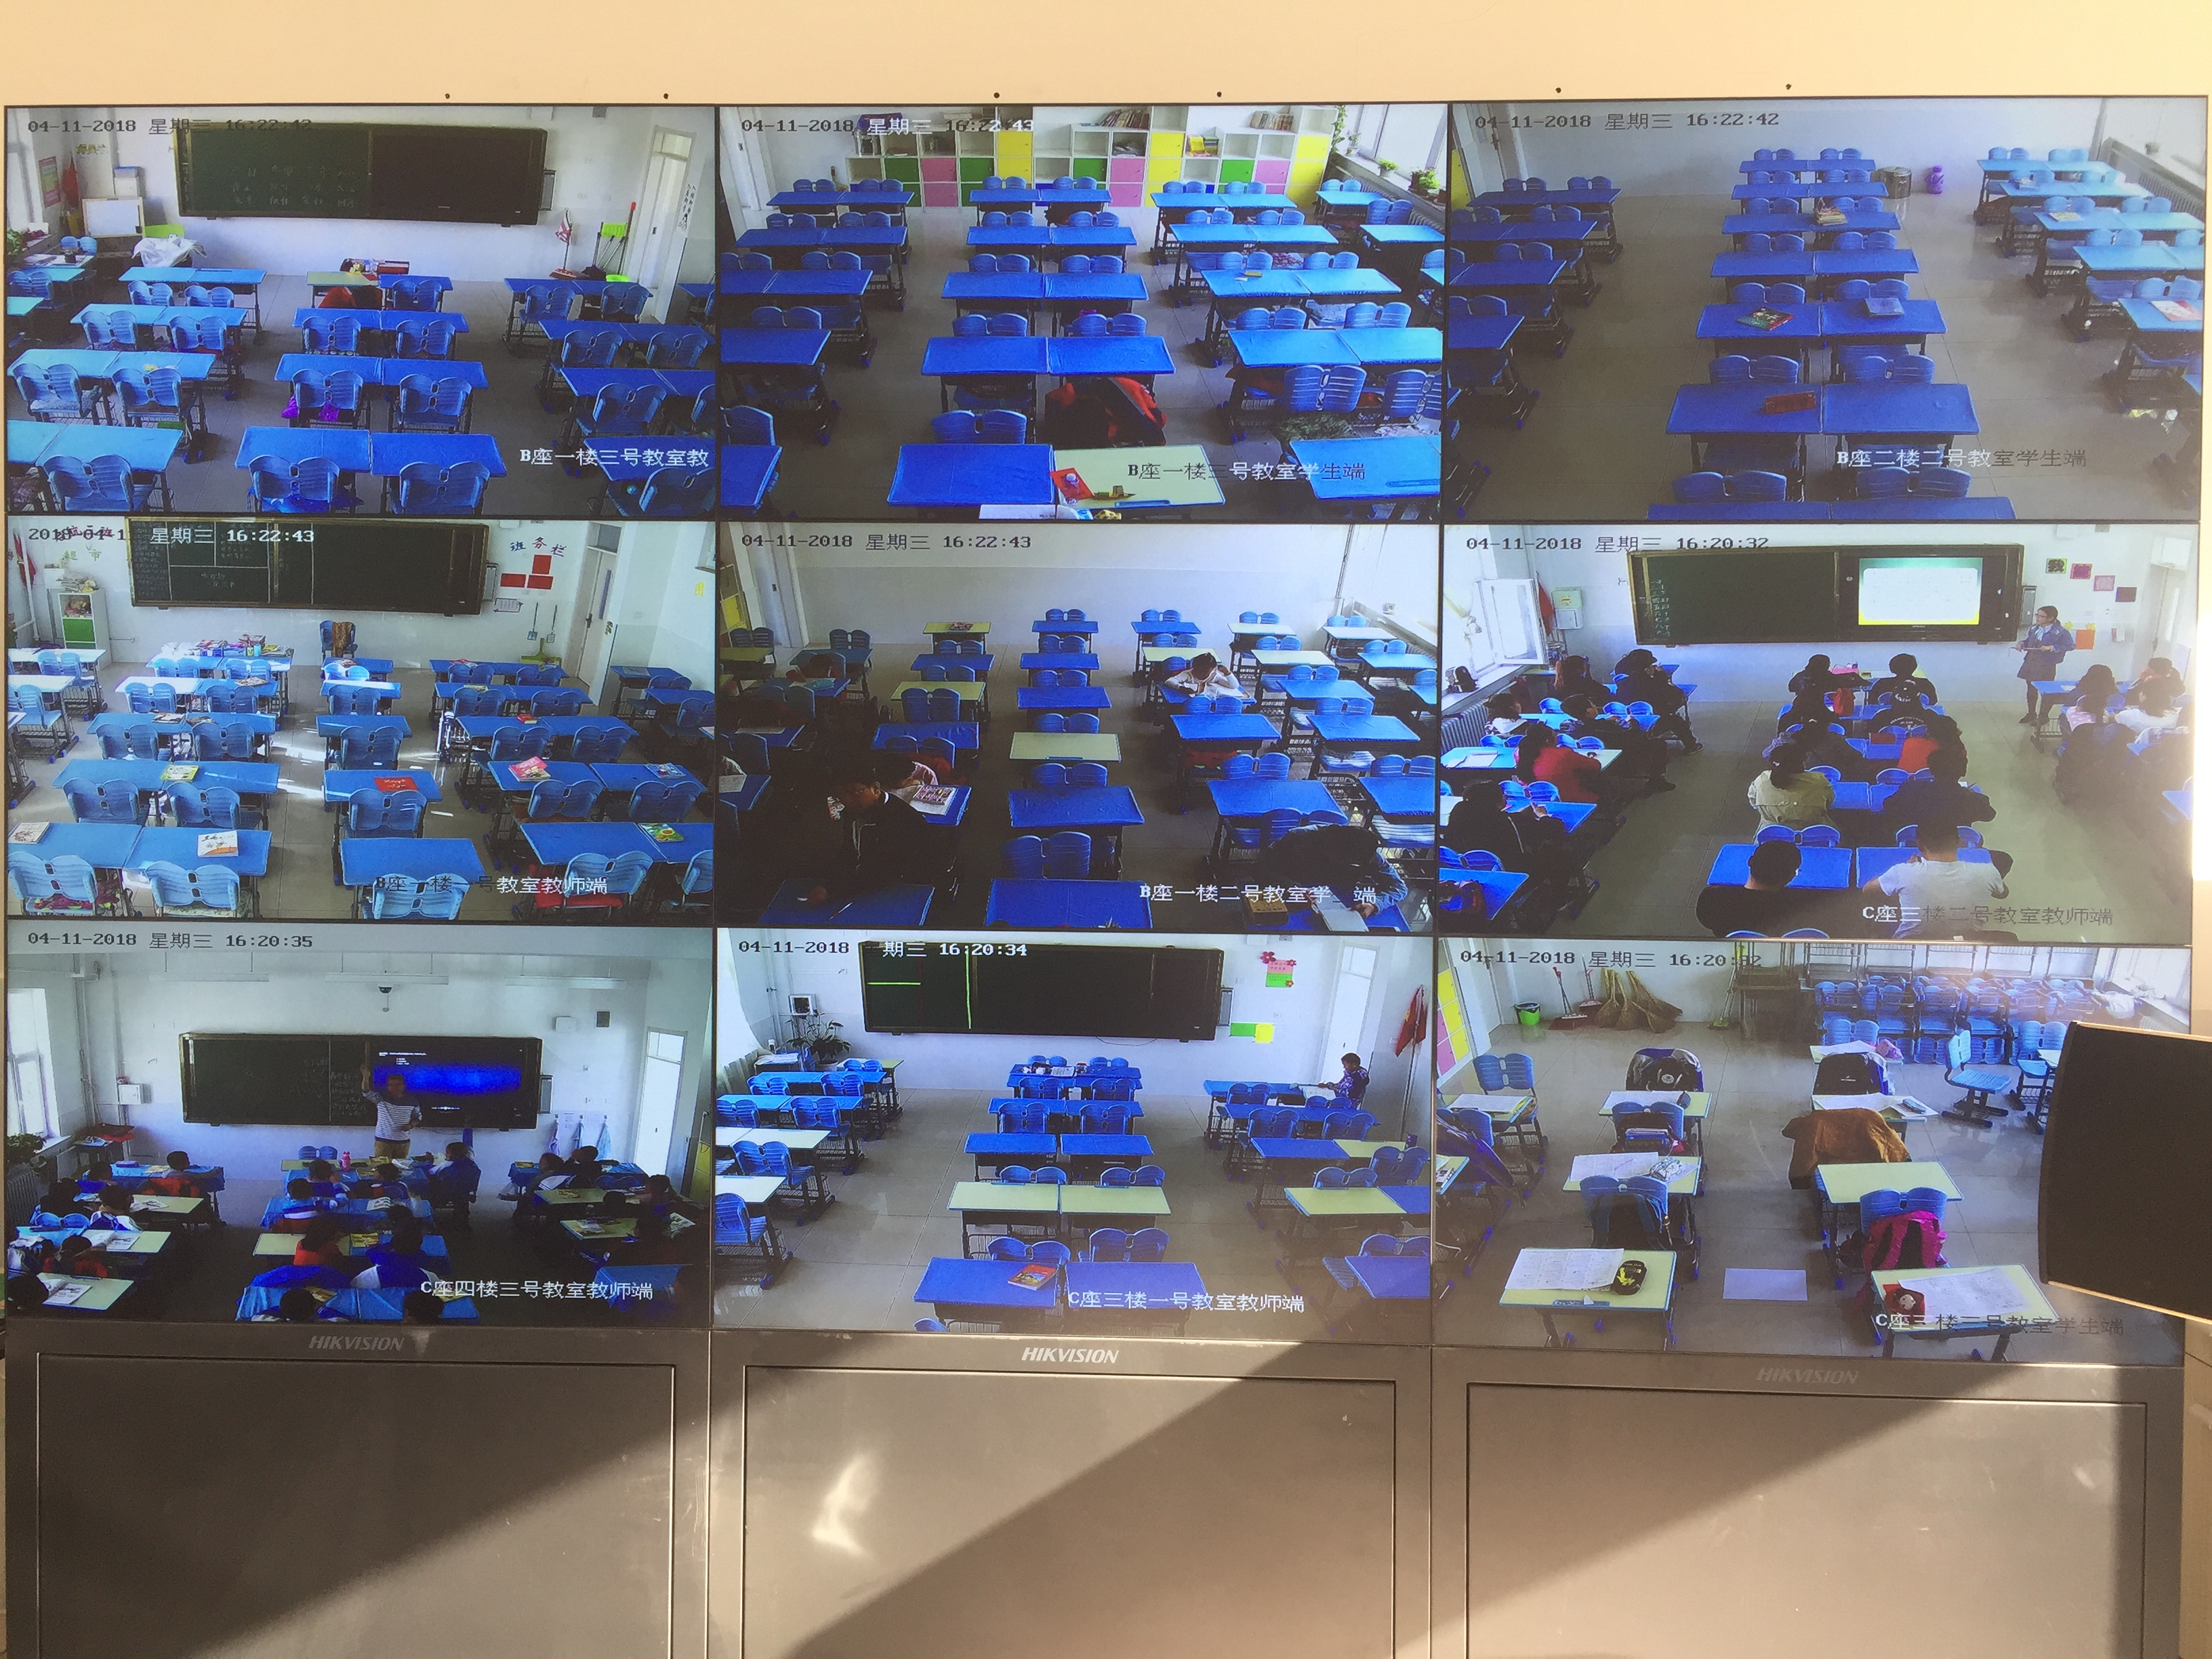 <b>学校视频监控系统建设</b>